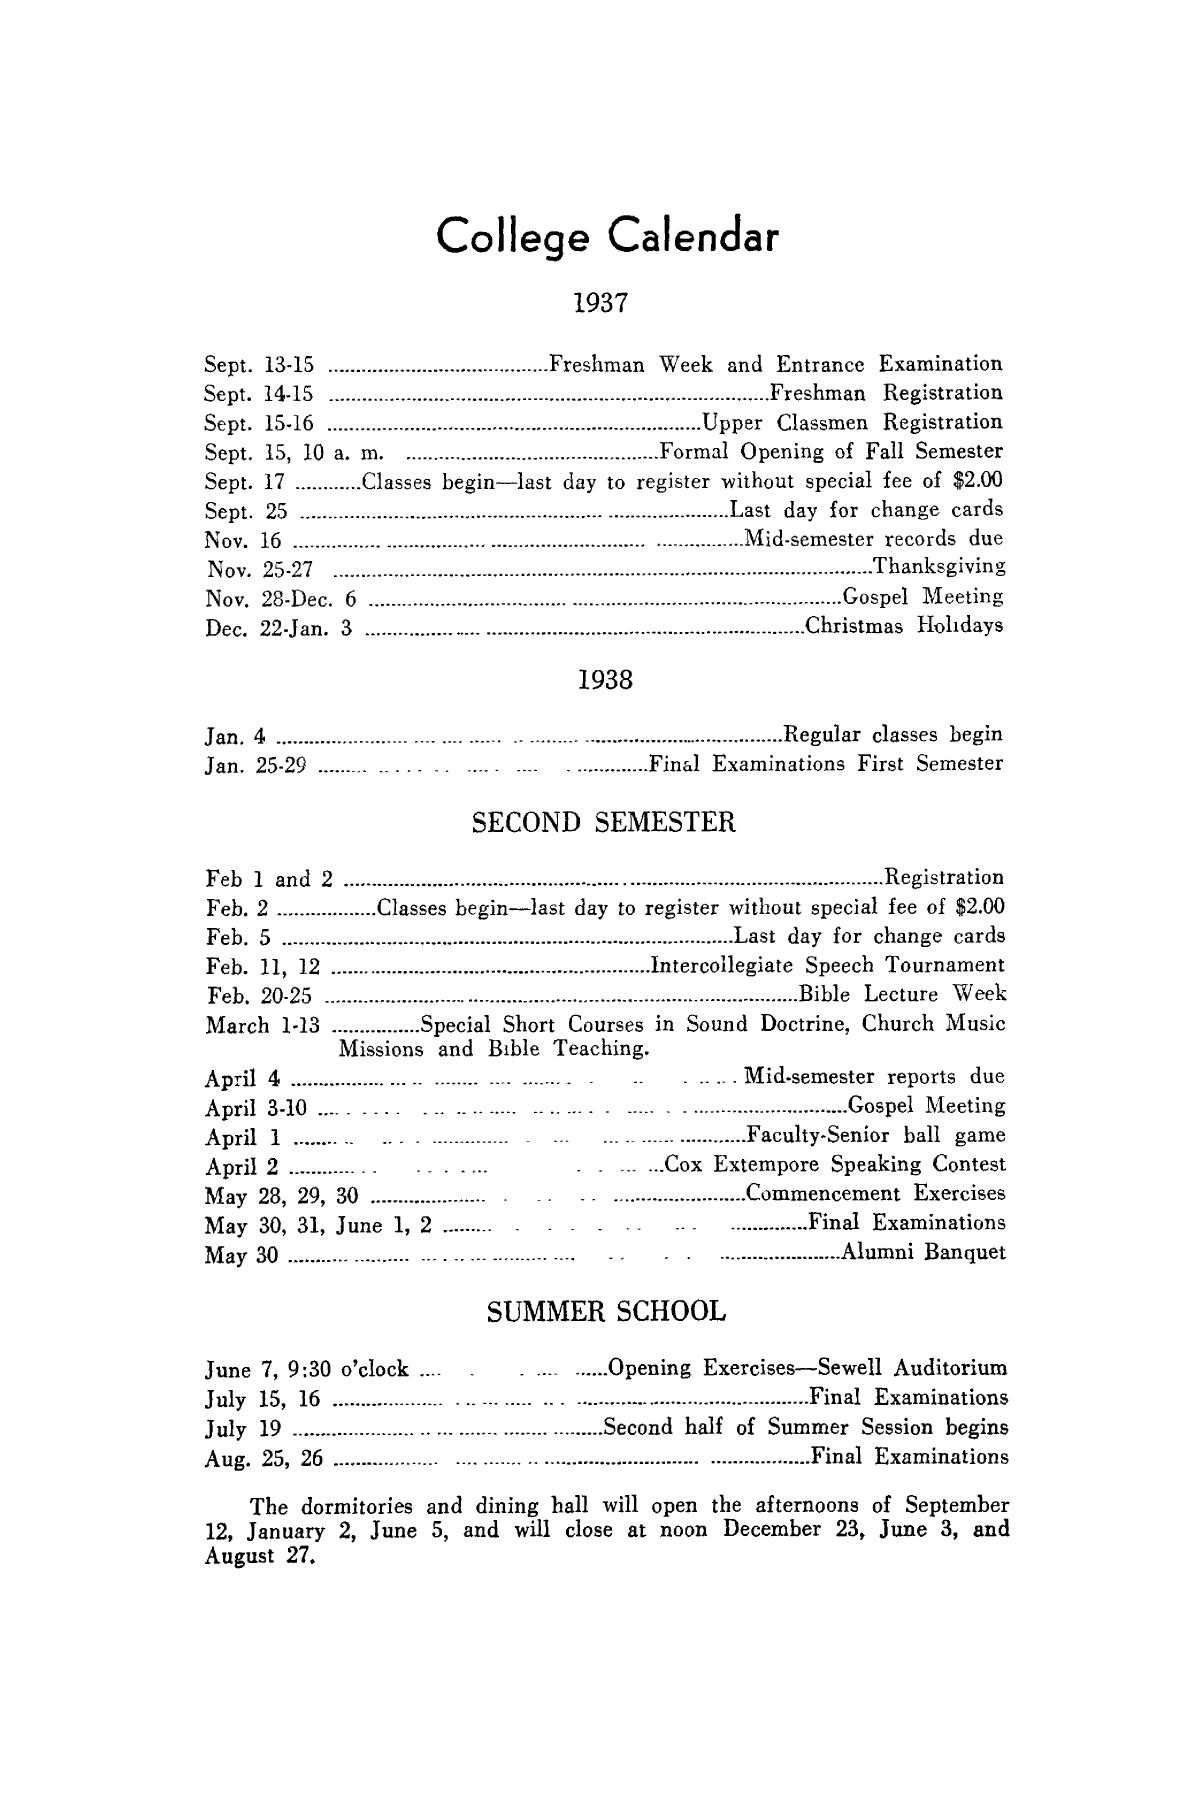 Catalog of Abilene Christian College, 1937-1938
                                                
                                                    2
                                                